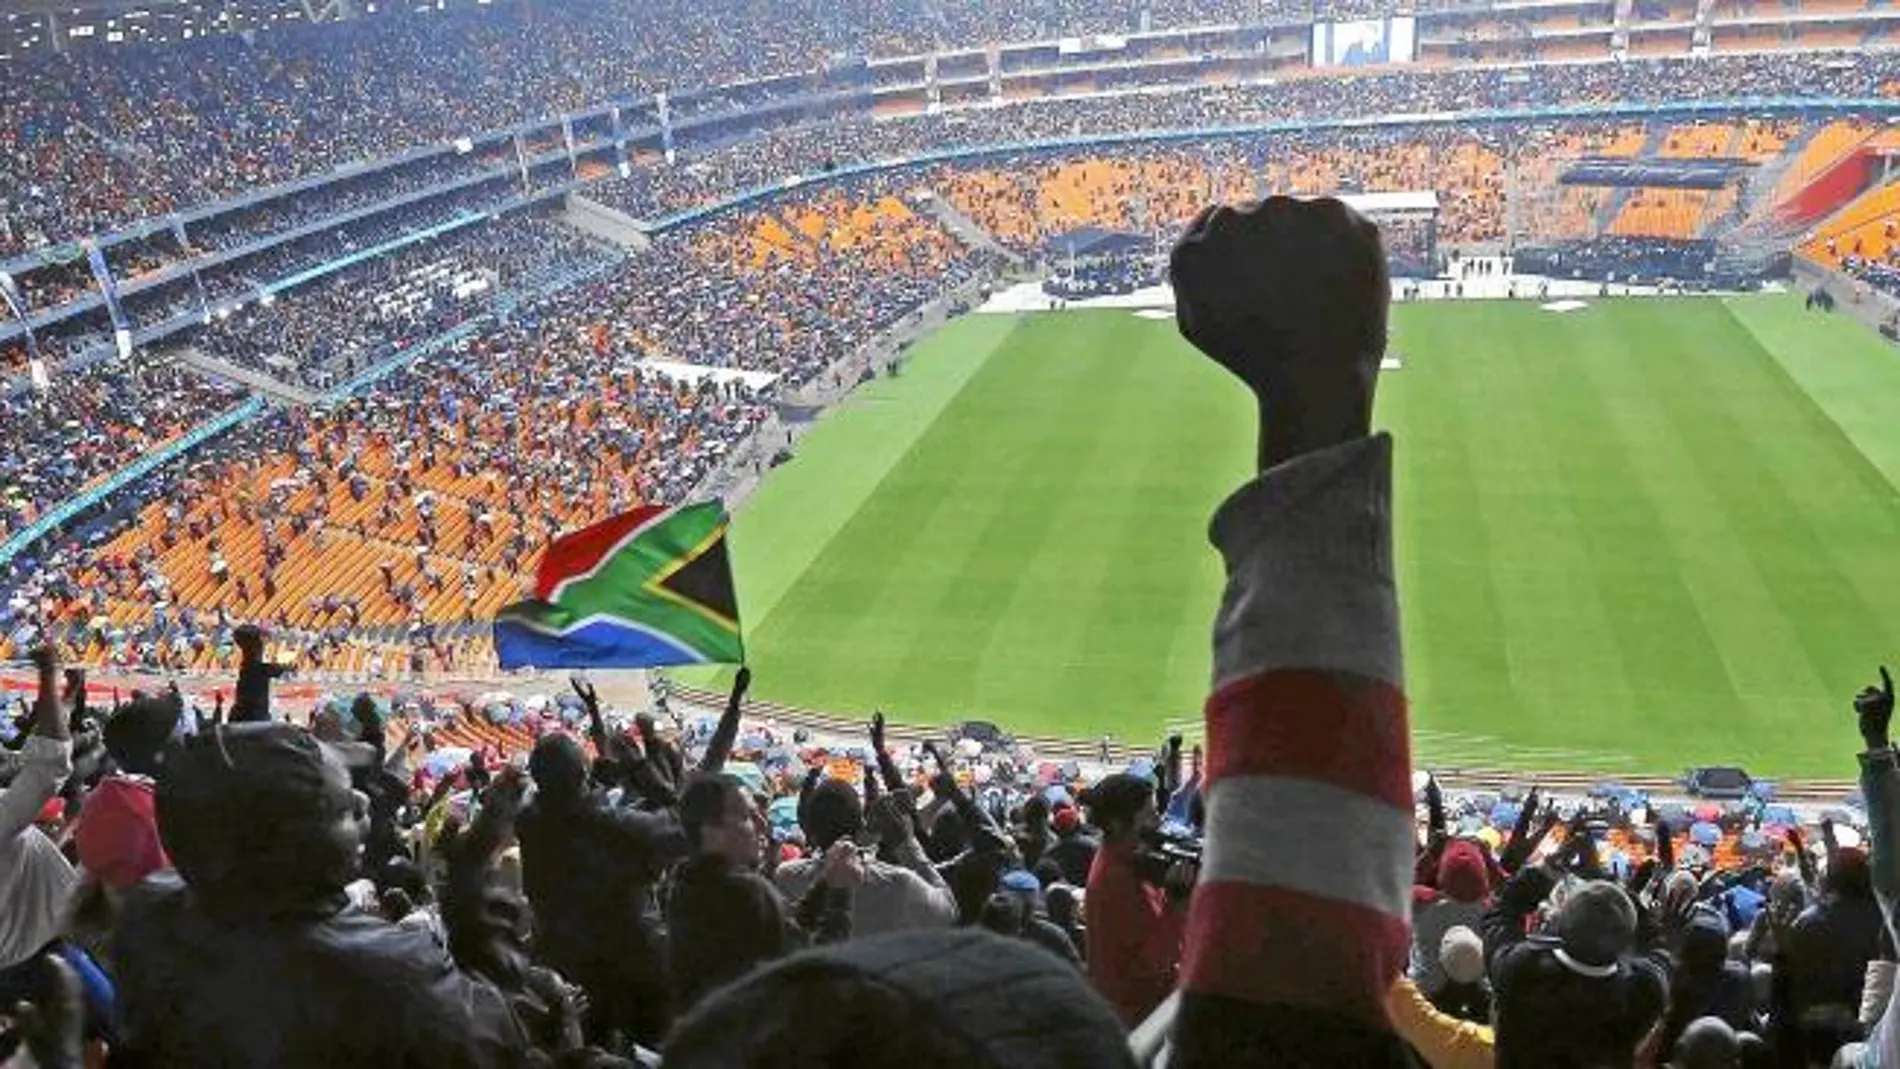 La multitud fue fiel a Mandela y abarrotó el Soccer City en su despedida